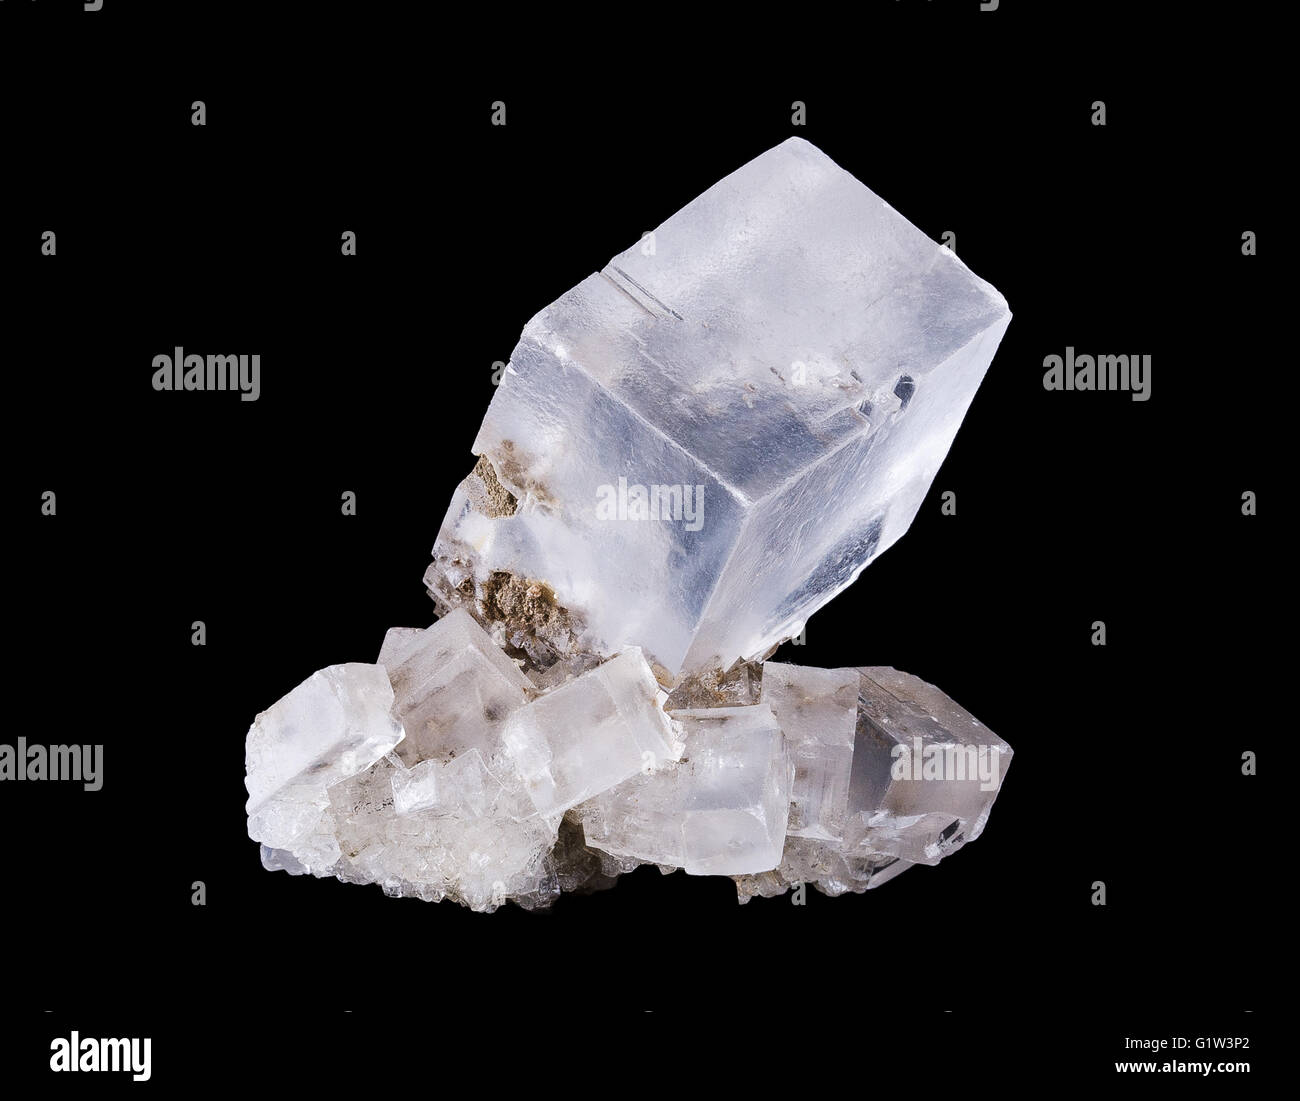 Cristal de Sel gemme vue avant du cluster sur fond noir, l'halite, le minéral sous forme de chlorure de sodium, NaCl. Banque D'Images